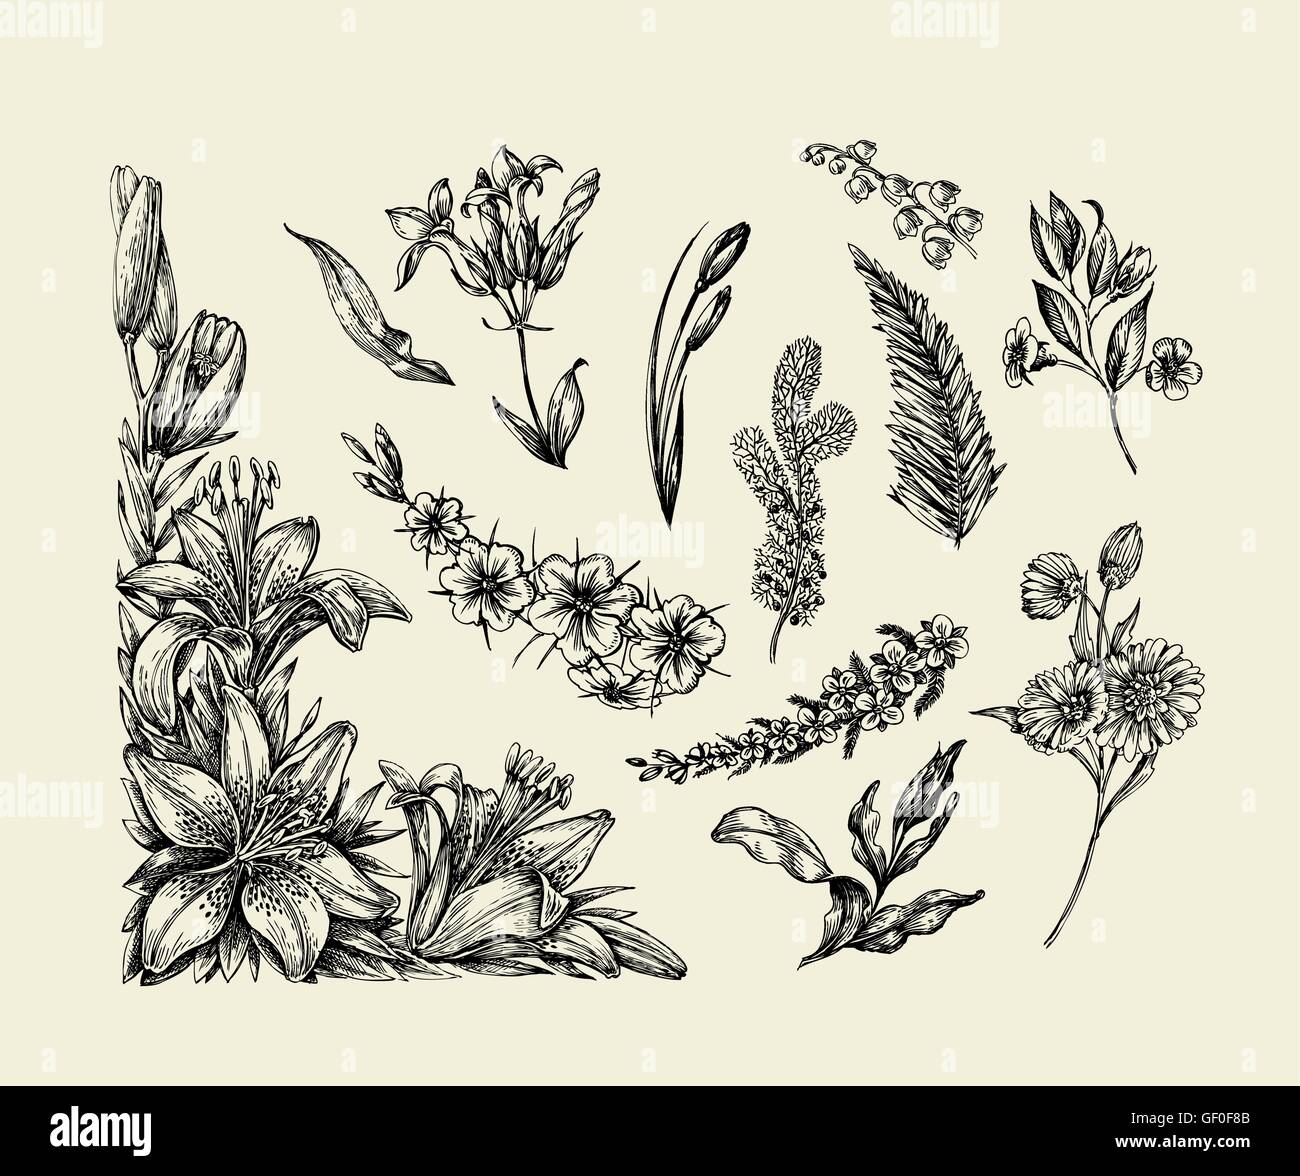 Des fleurs. Croquis dessinés à la main, fleur, Lily, fougère, herbe, herbe, Bracken, Lilia. Vector illustration Illustration de Vecteur